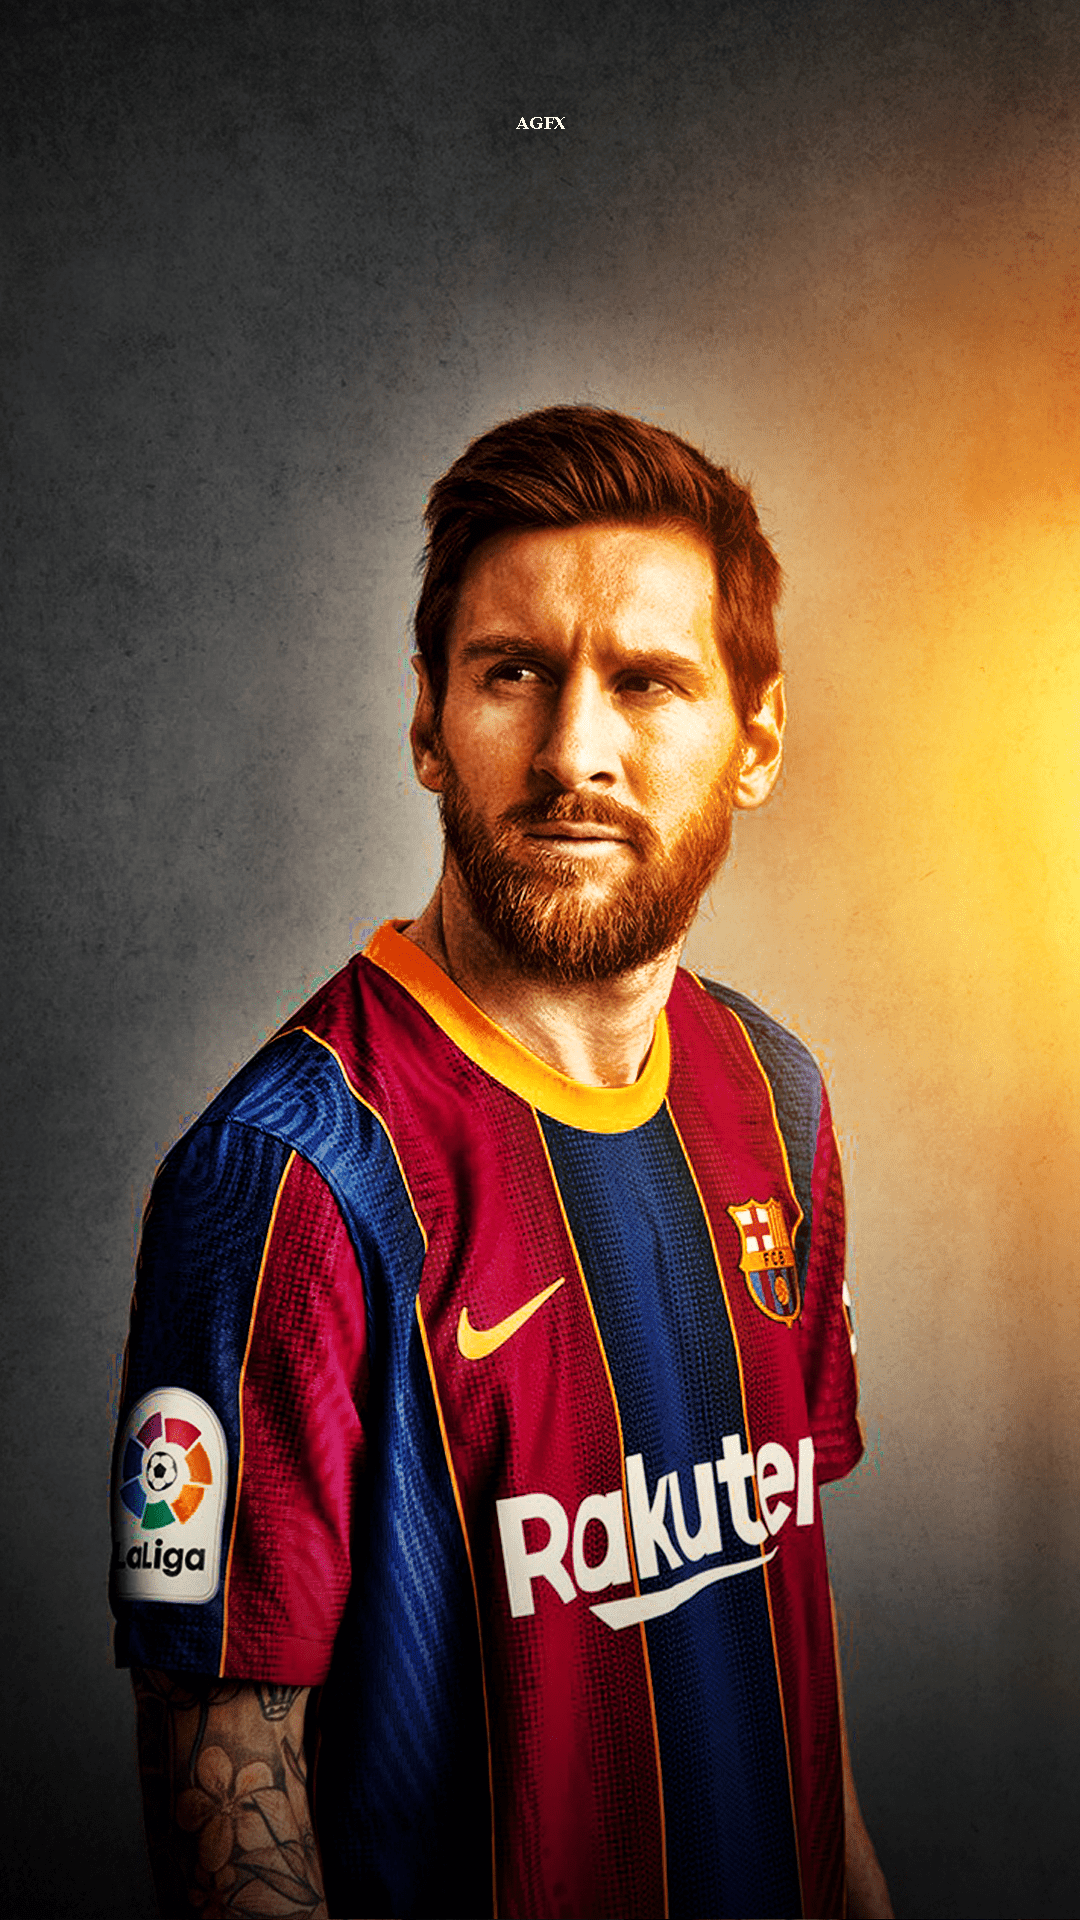 Hãy tải về bức nền trang trí cho điện thoại của bạn với hình ảnh Messi lung linh. Nó rất đẹp và sẽ làm cho màn hình của bạn trở nên tươi sáng và cuốn hút hơn.